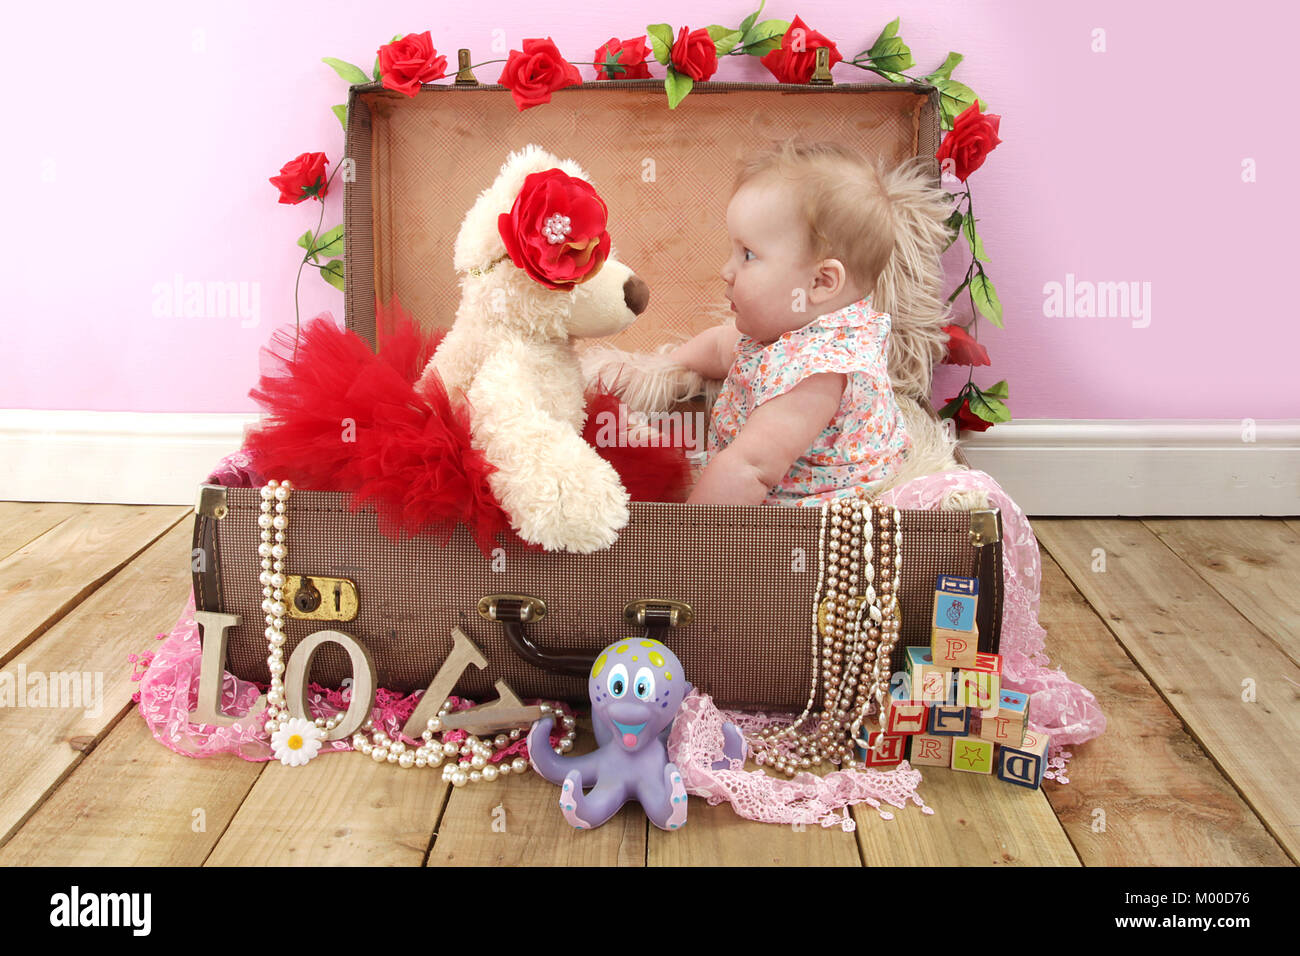 6 mese fa bella ragazza seduta con Teddy in una valigia, tempo di gioco nel vivaio Foto Stock